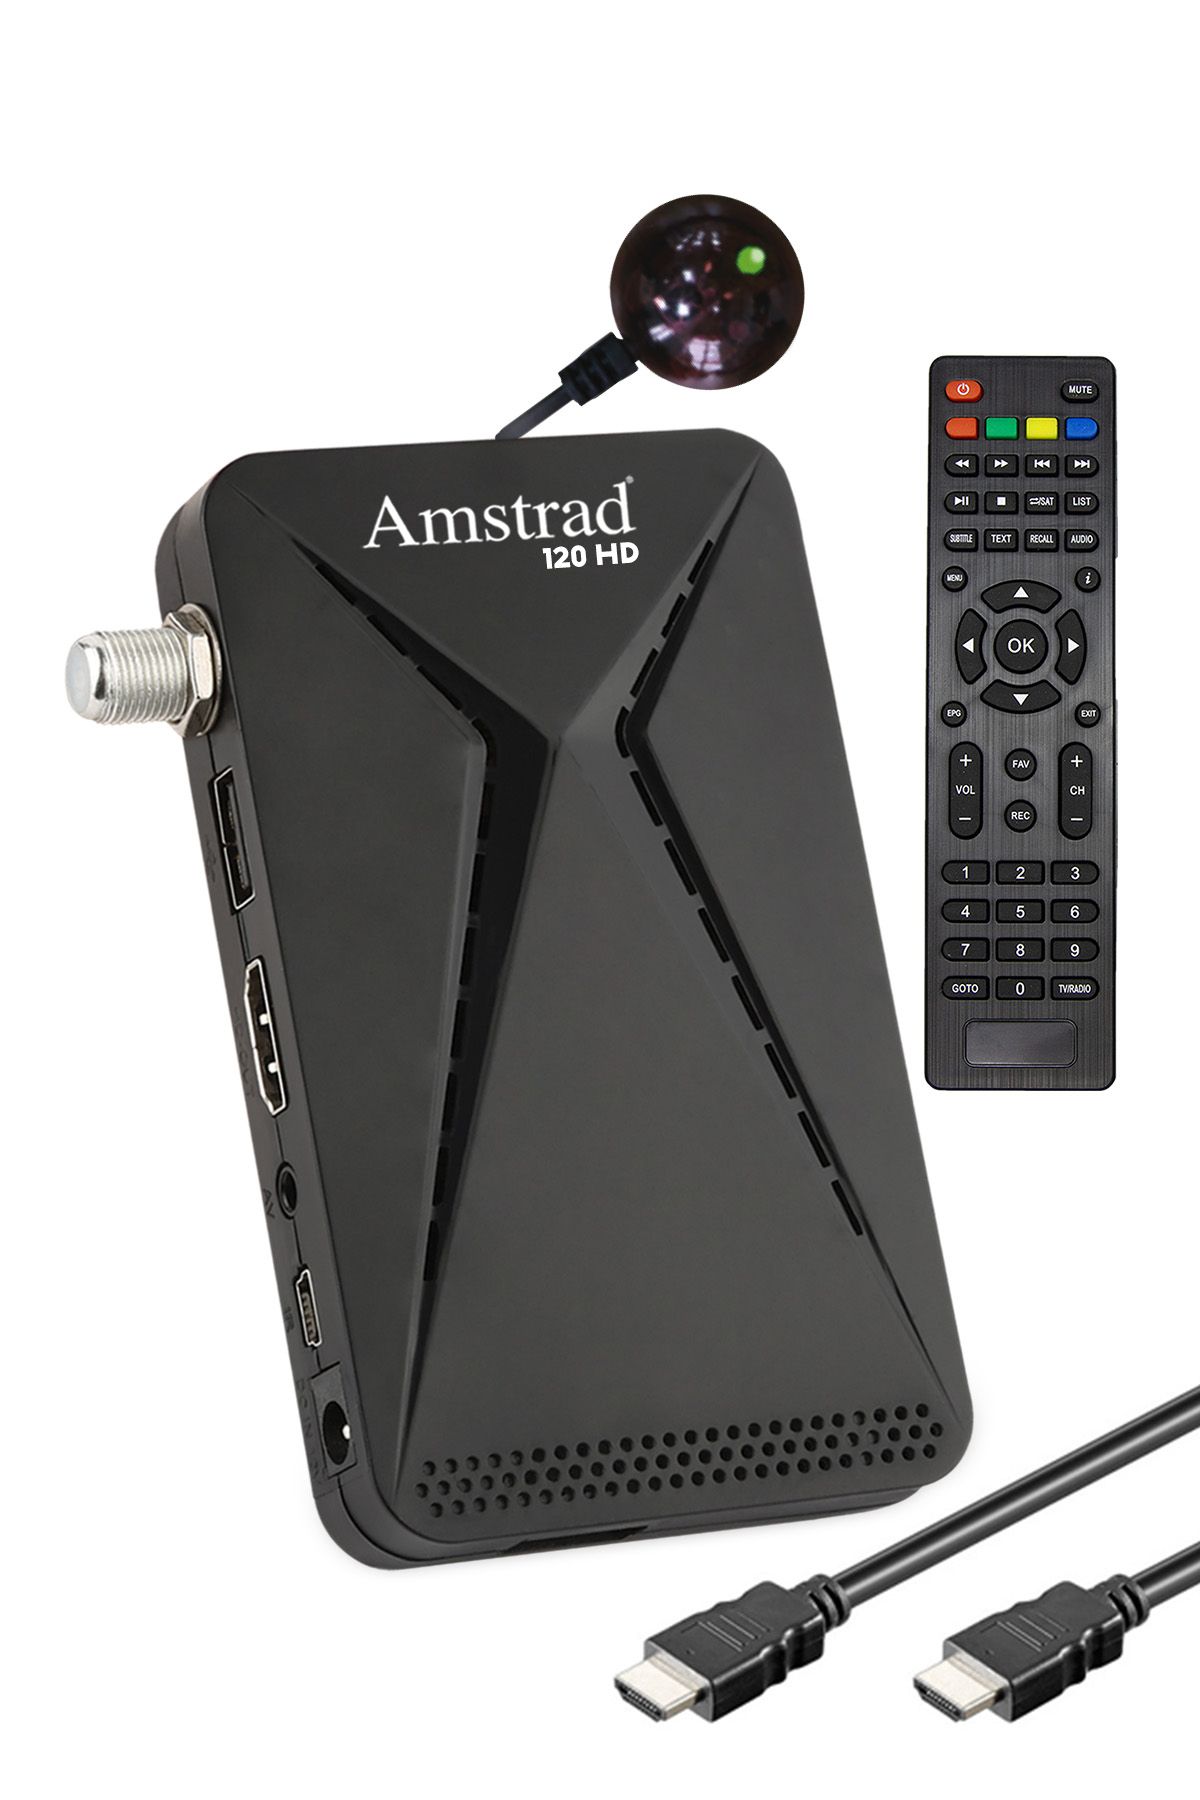 Amstrad 120 Hd - Mini Hd Uydu Alıcısı - ( Kanallar Yüklü - Tkgs - Usb - Hdmi )